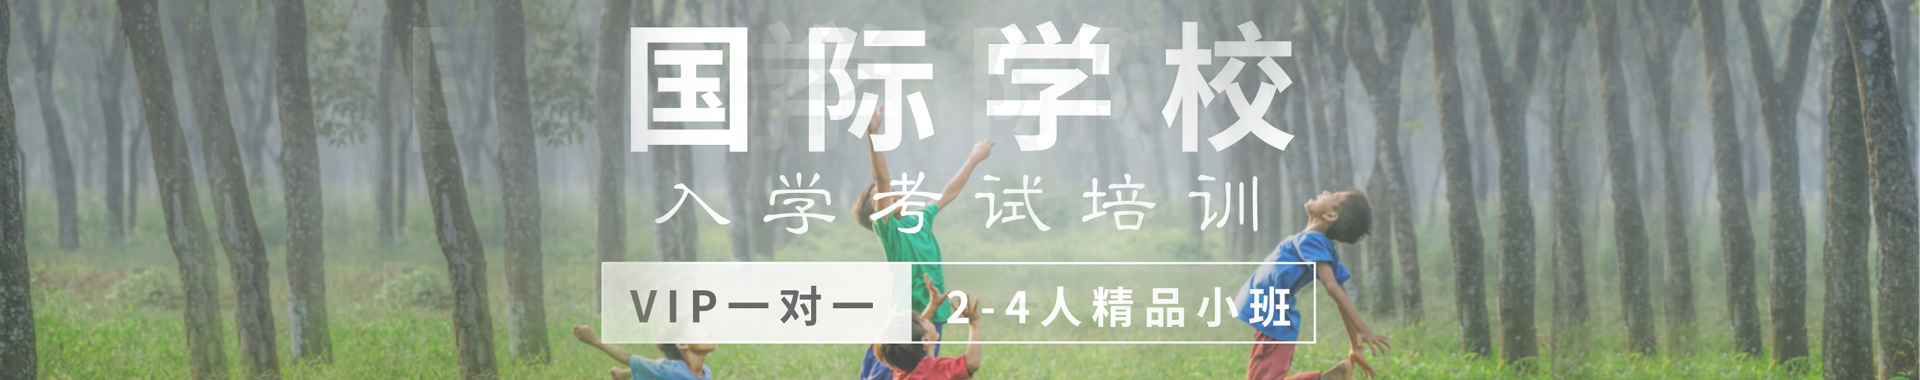 深圳卡顿国际教育banner2